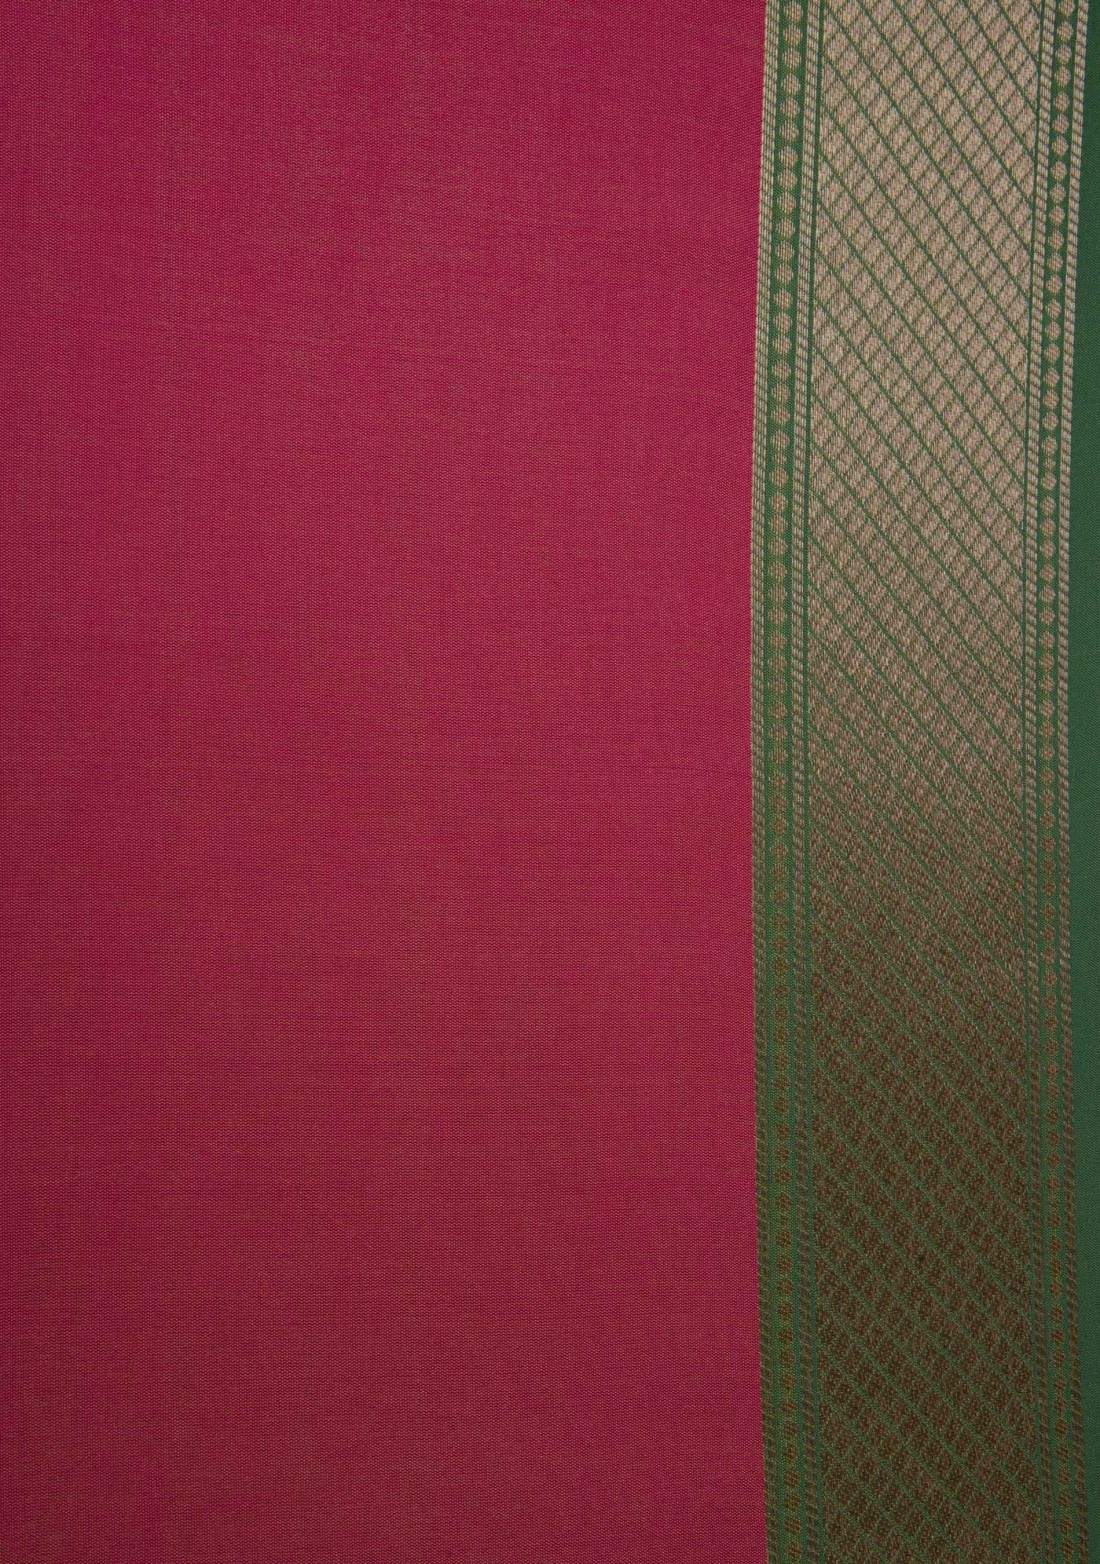 Parrot Green & Pink Woven Banarasi Silk Saree 